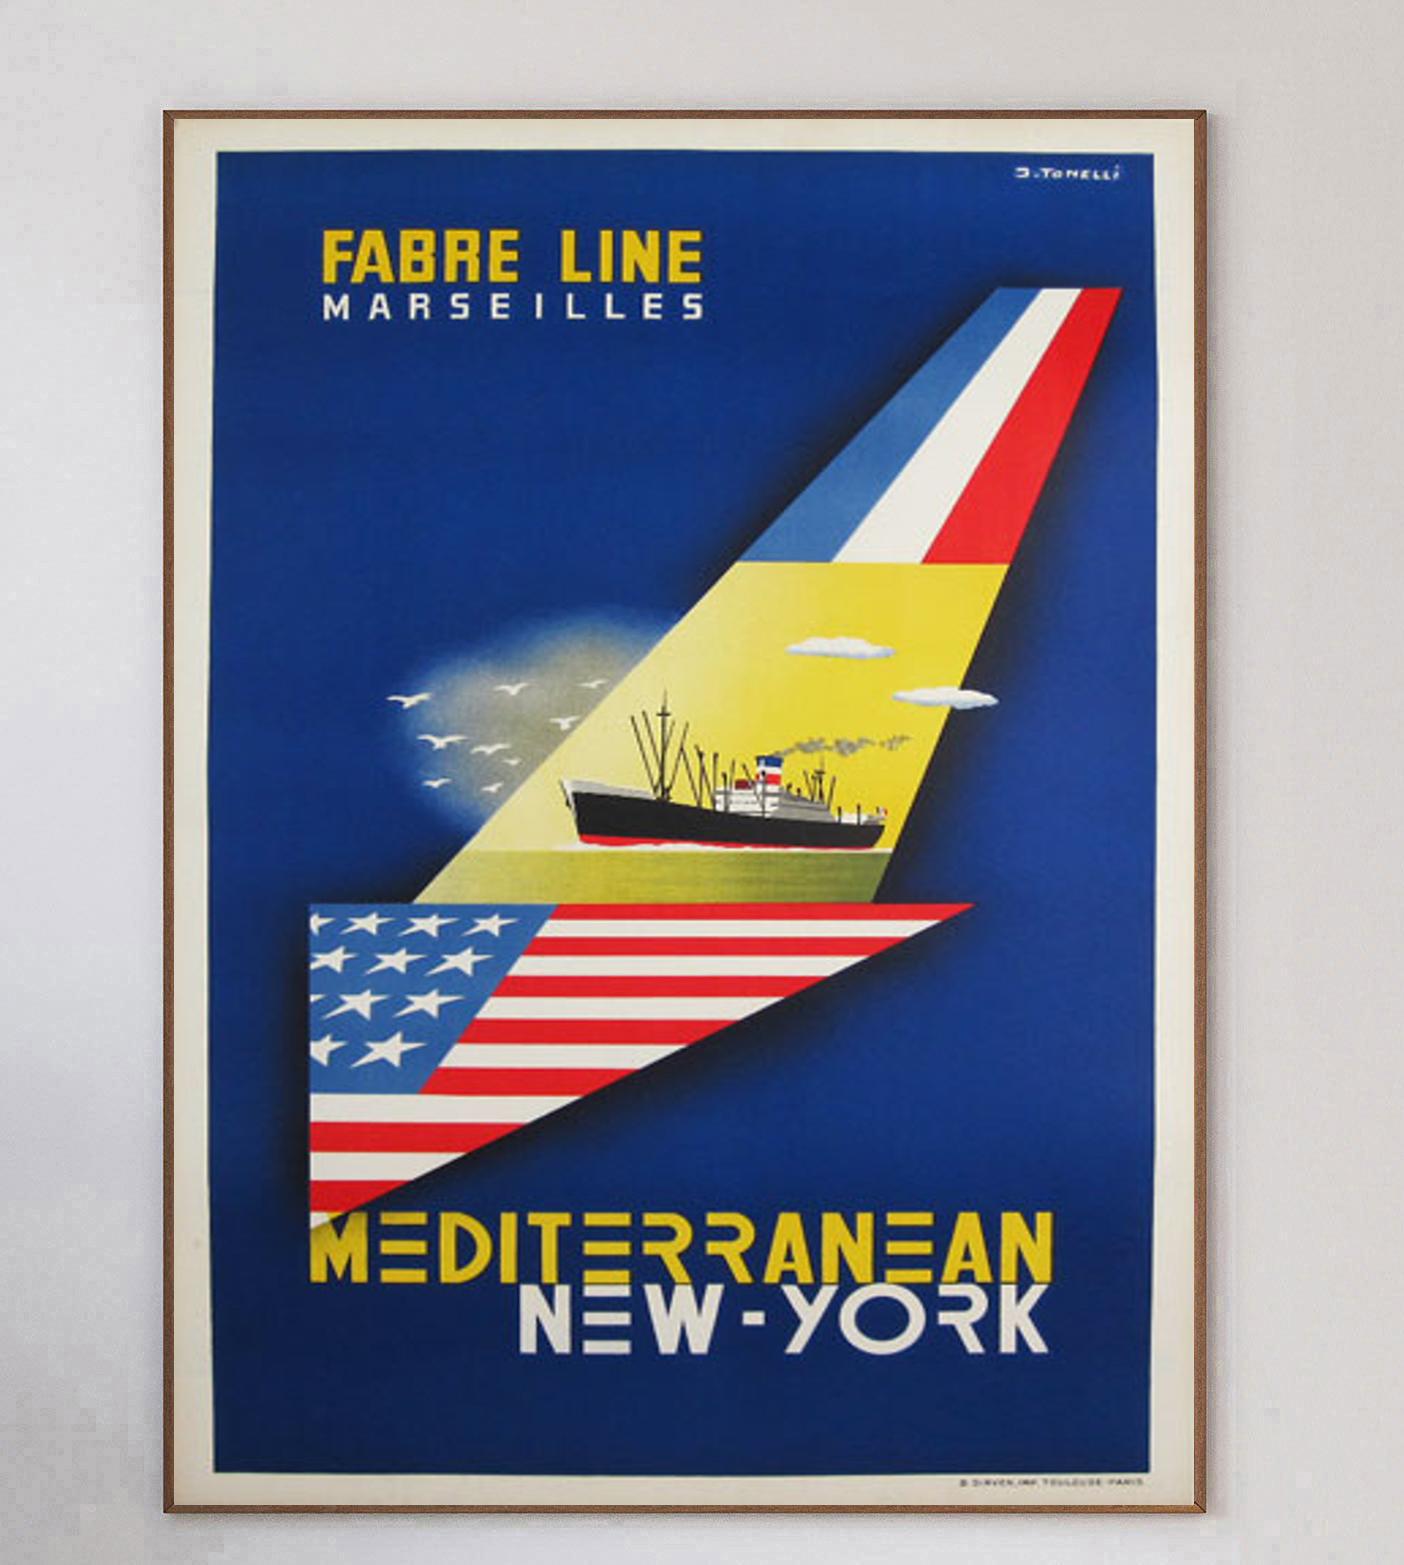 Cette superbe et rare affiche pour la SNCF a été conçue par l'iconique affichiste et graphiste Bernard Villemot. Plus connu pour ses collaborations avec des entreprises telles que Bally, Air France et Perrier, il est reconnu comme l'un des plus